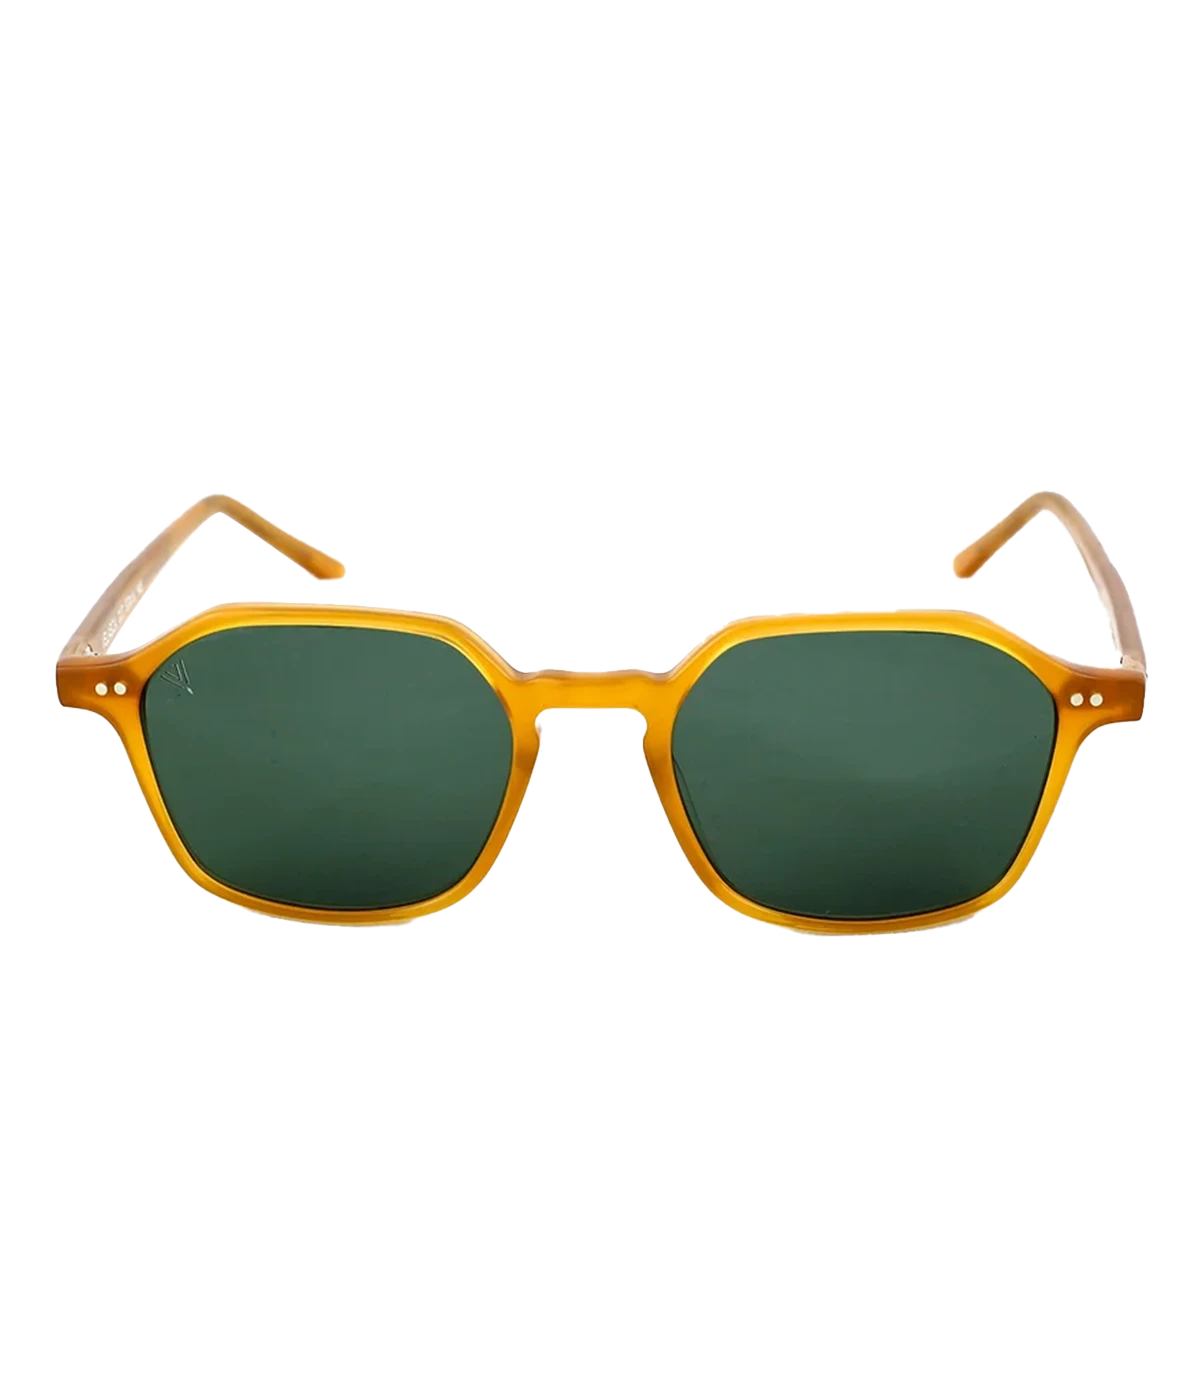 Velasca Sunglasses in Honey & Green